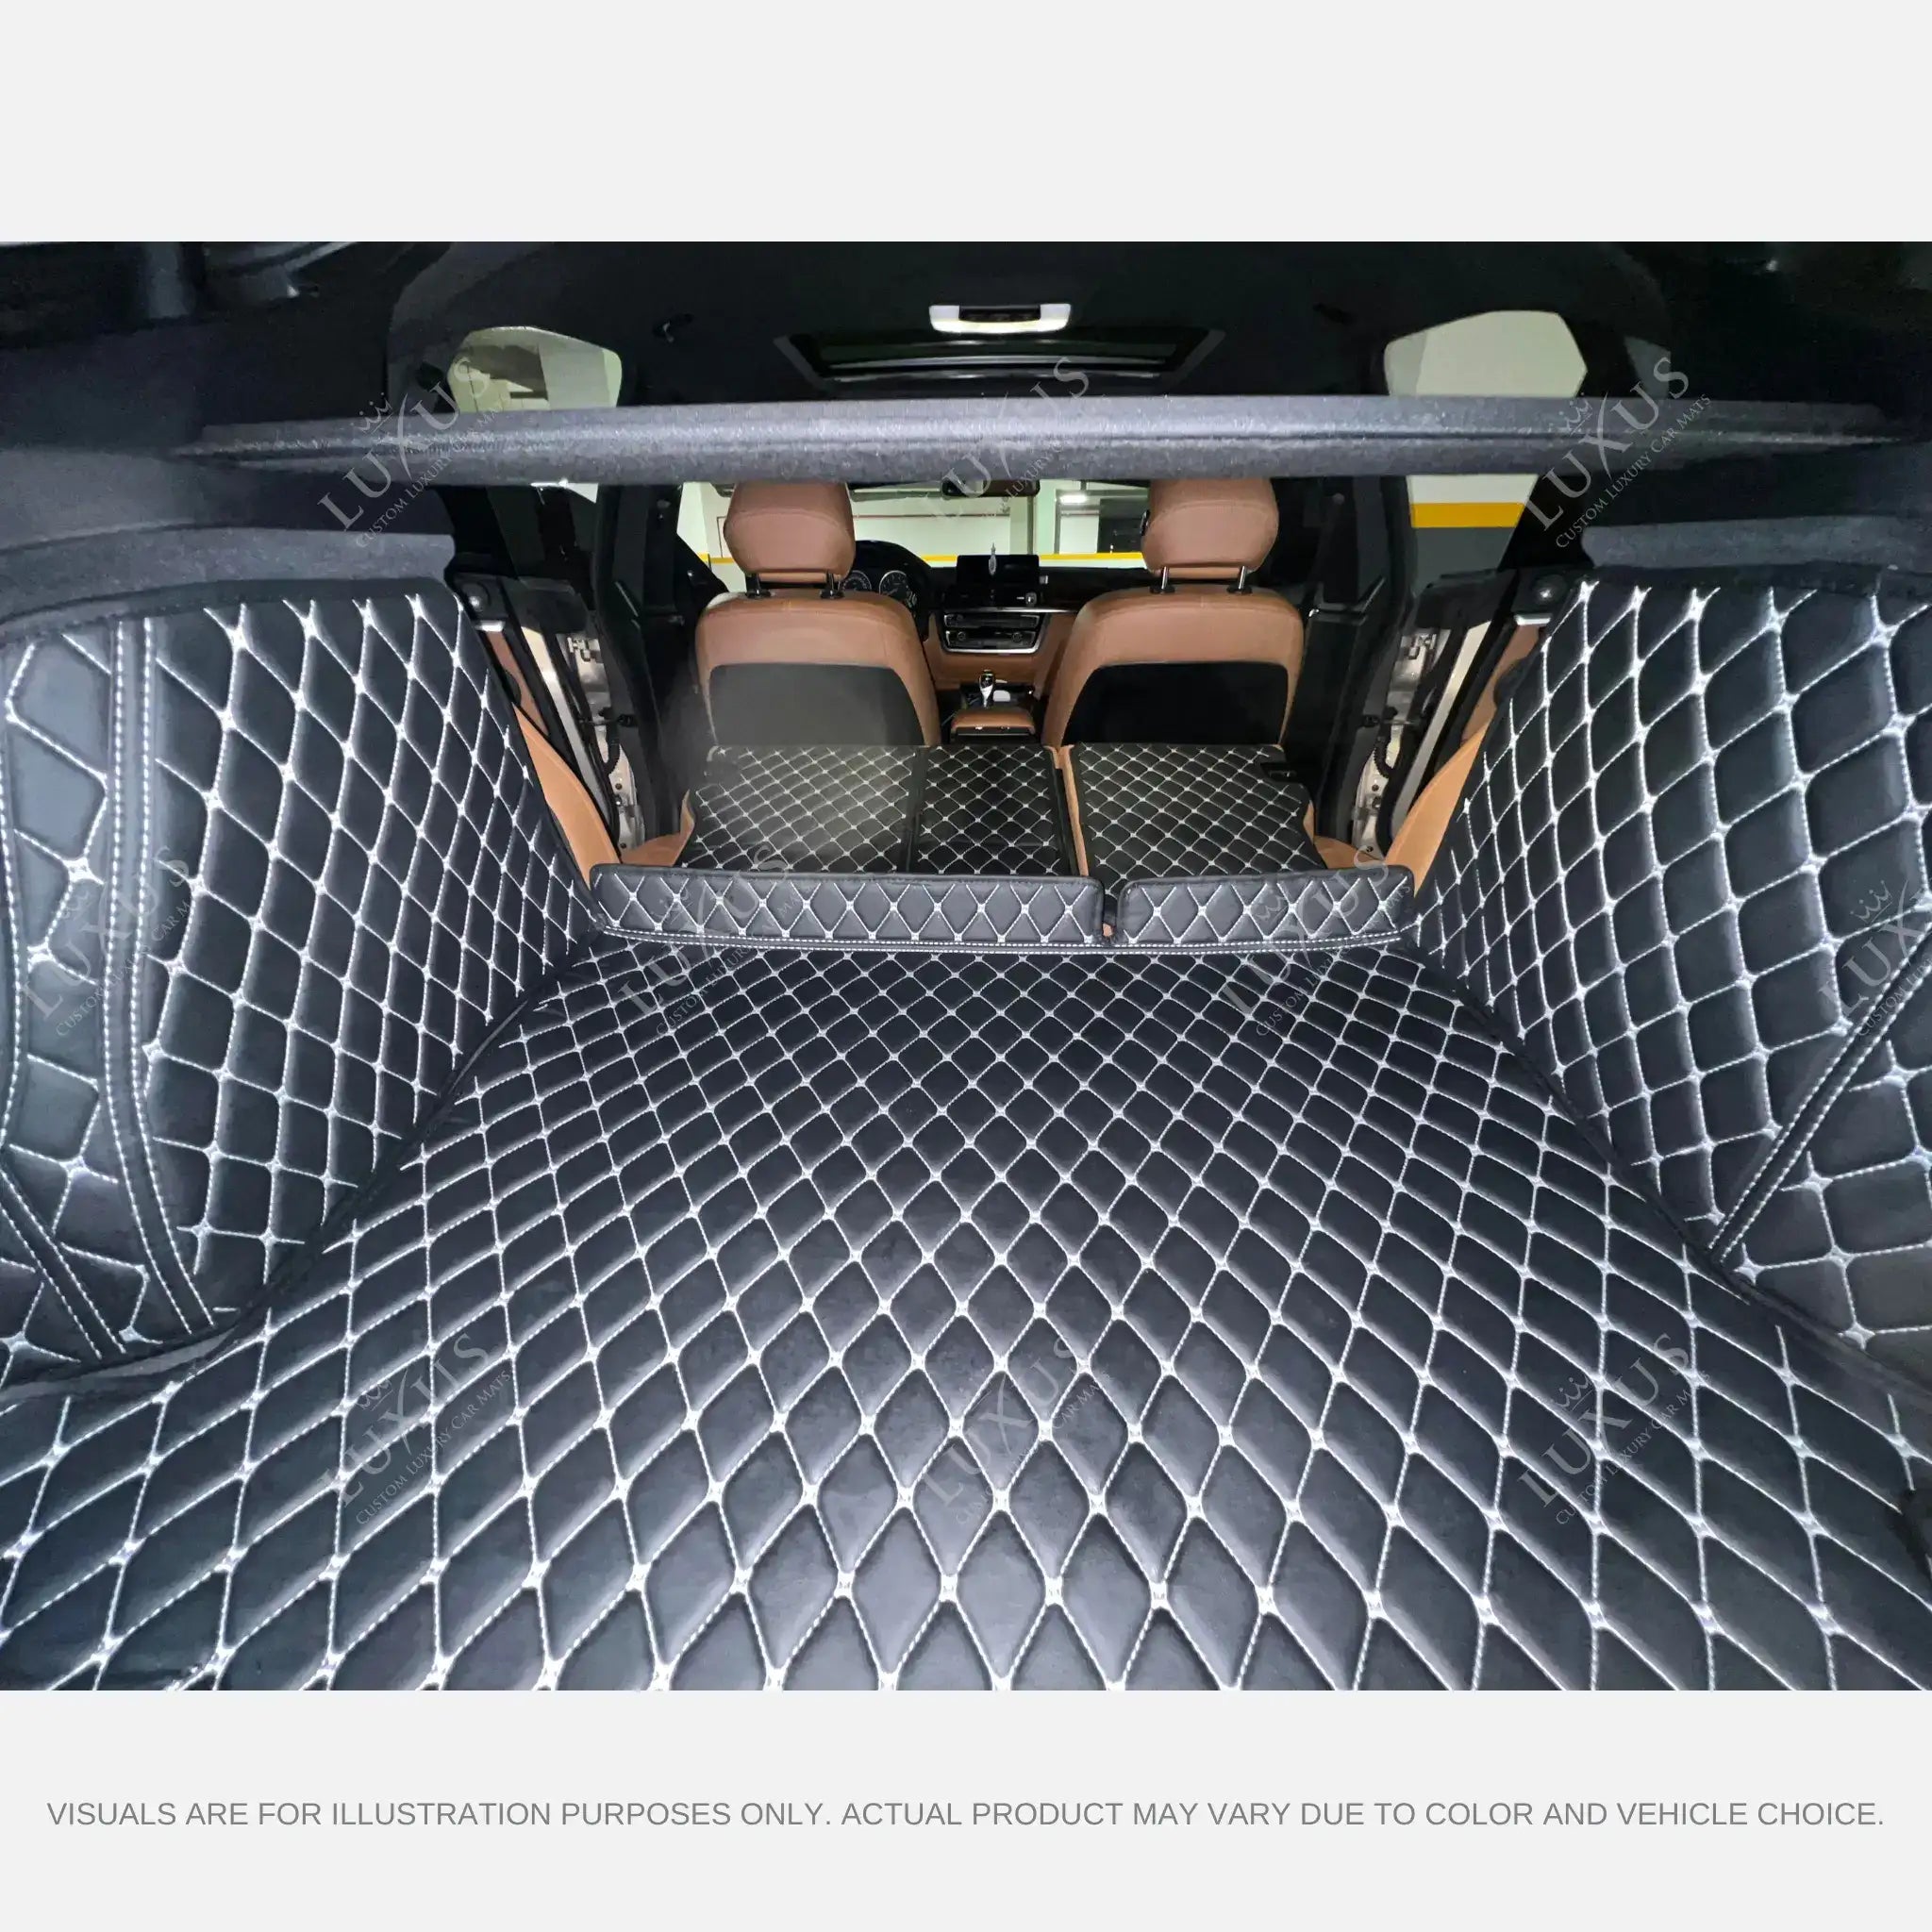 Luxus Car Mats™ – 3D-Luxus-Leder-Kofferraum-/Kofferraummatte mit schwarzen und roten Nähten